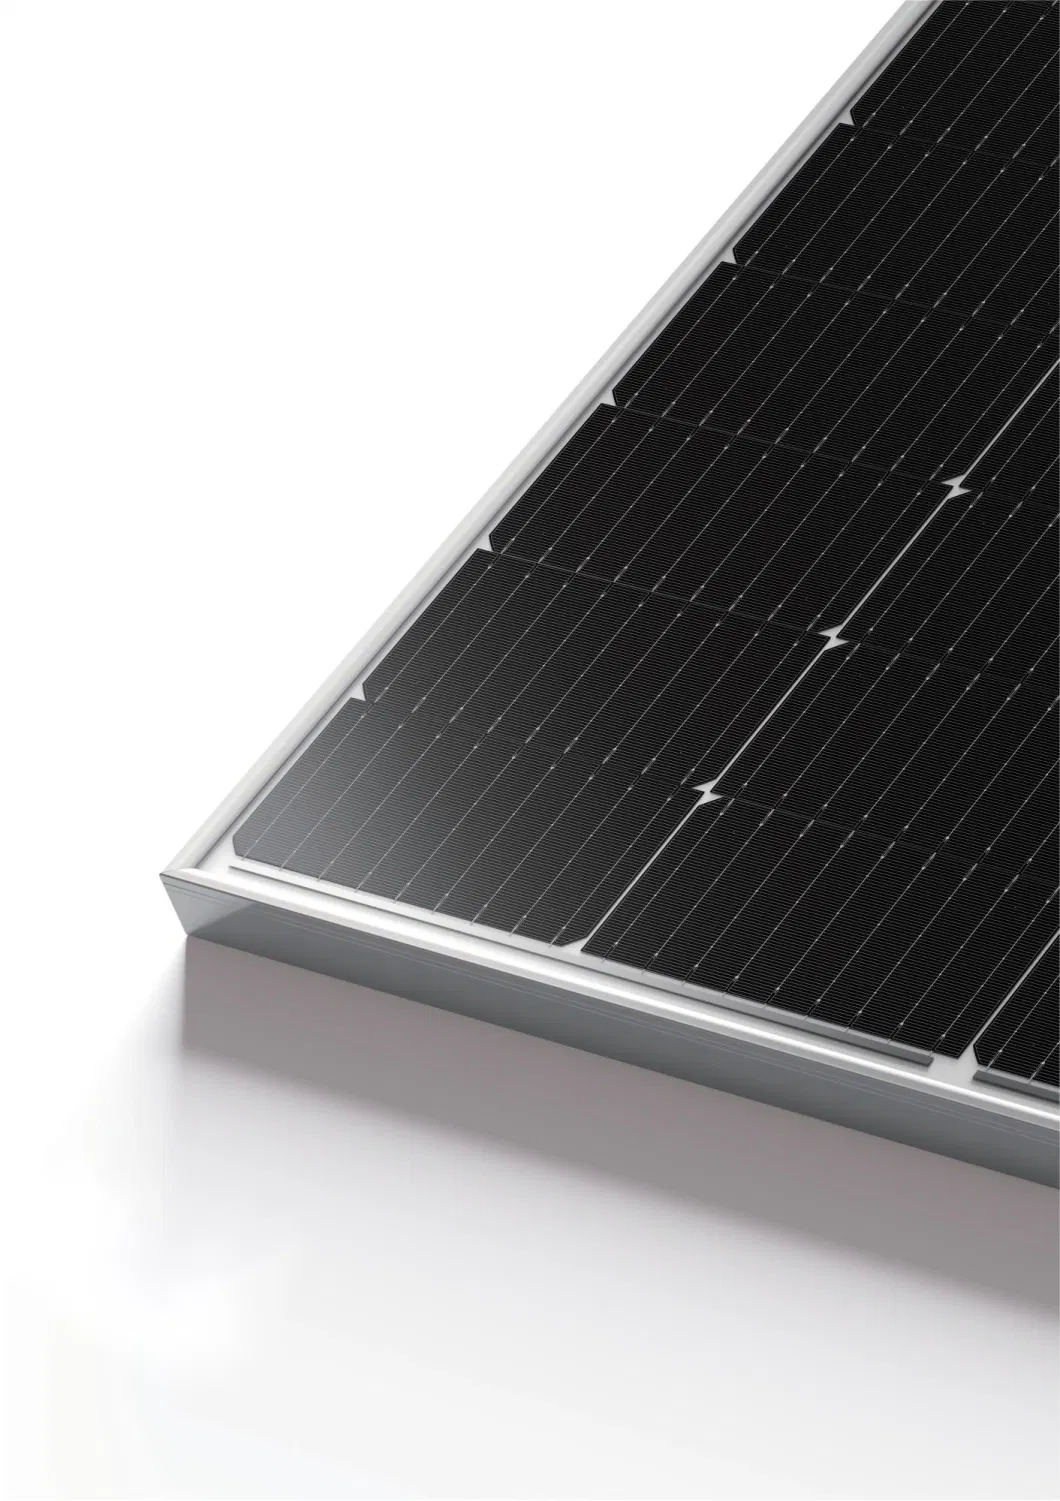 540W 545W 550W 555W 560W High-Performance Stable Monocrystalline Silicon Solar Panel